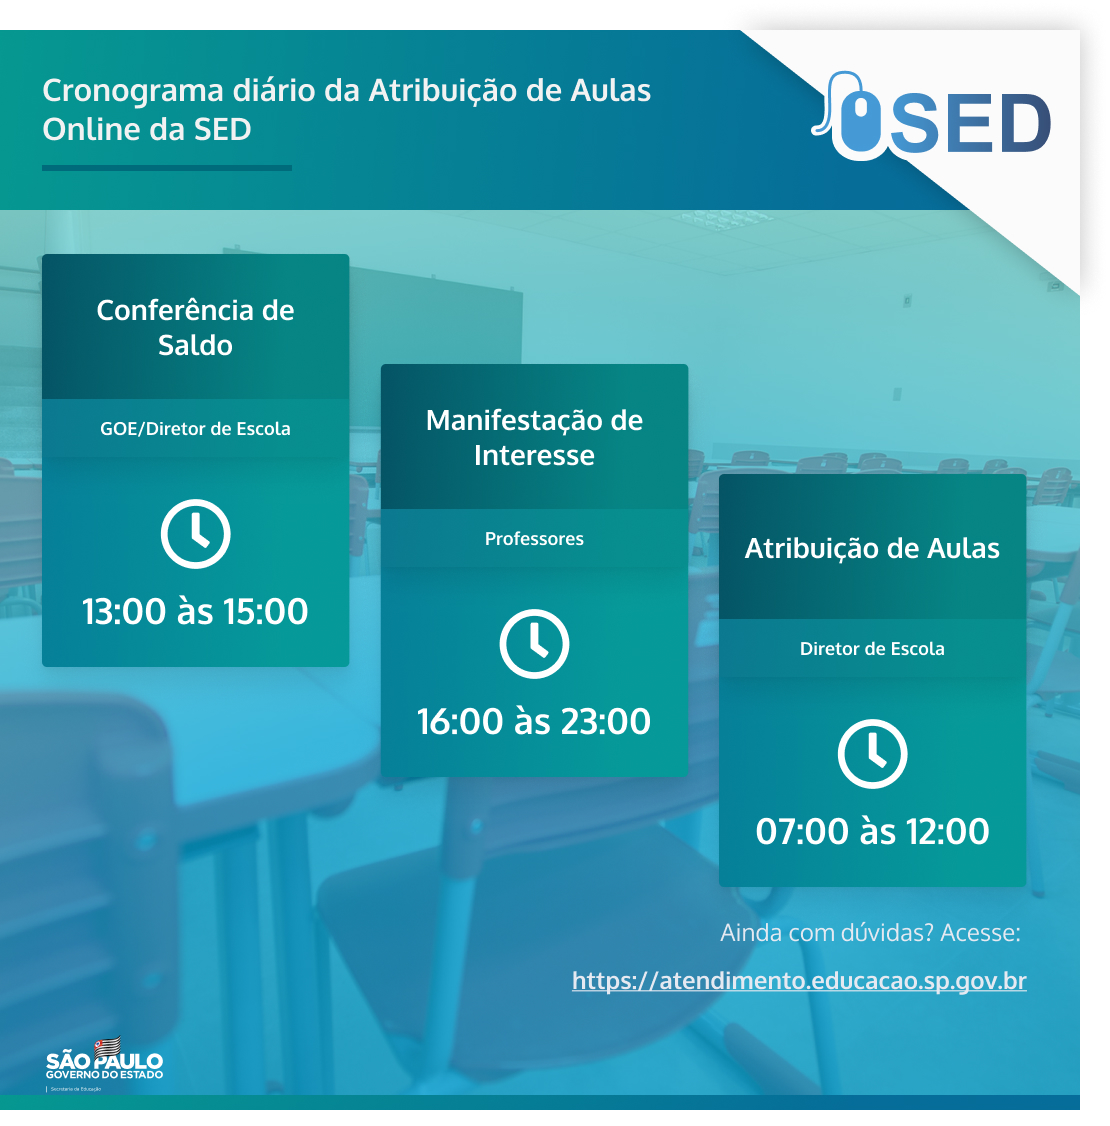 SME - 27ª CONVOCAÇÃO PARA SESSÃO DE ATRIBUIÇÃO DE CLASSES E AULAS